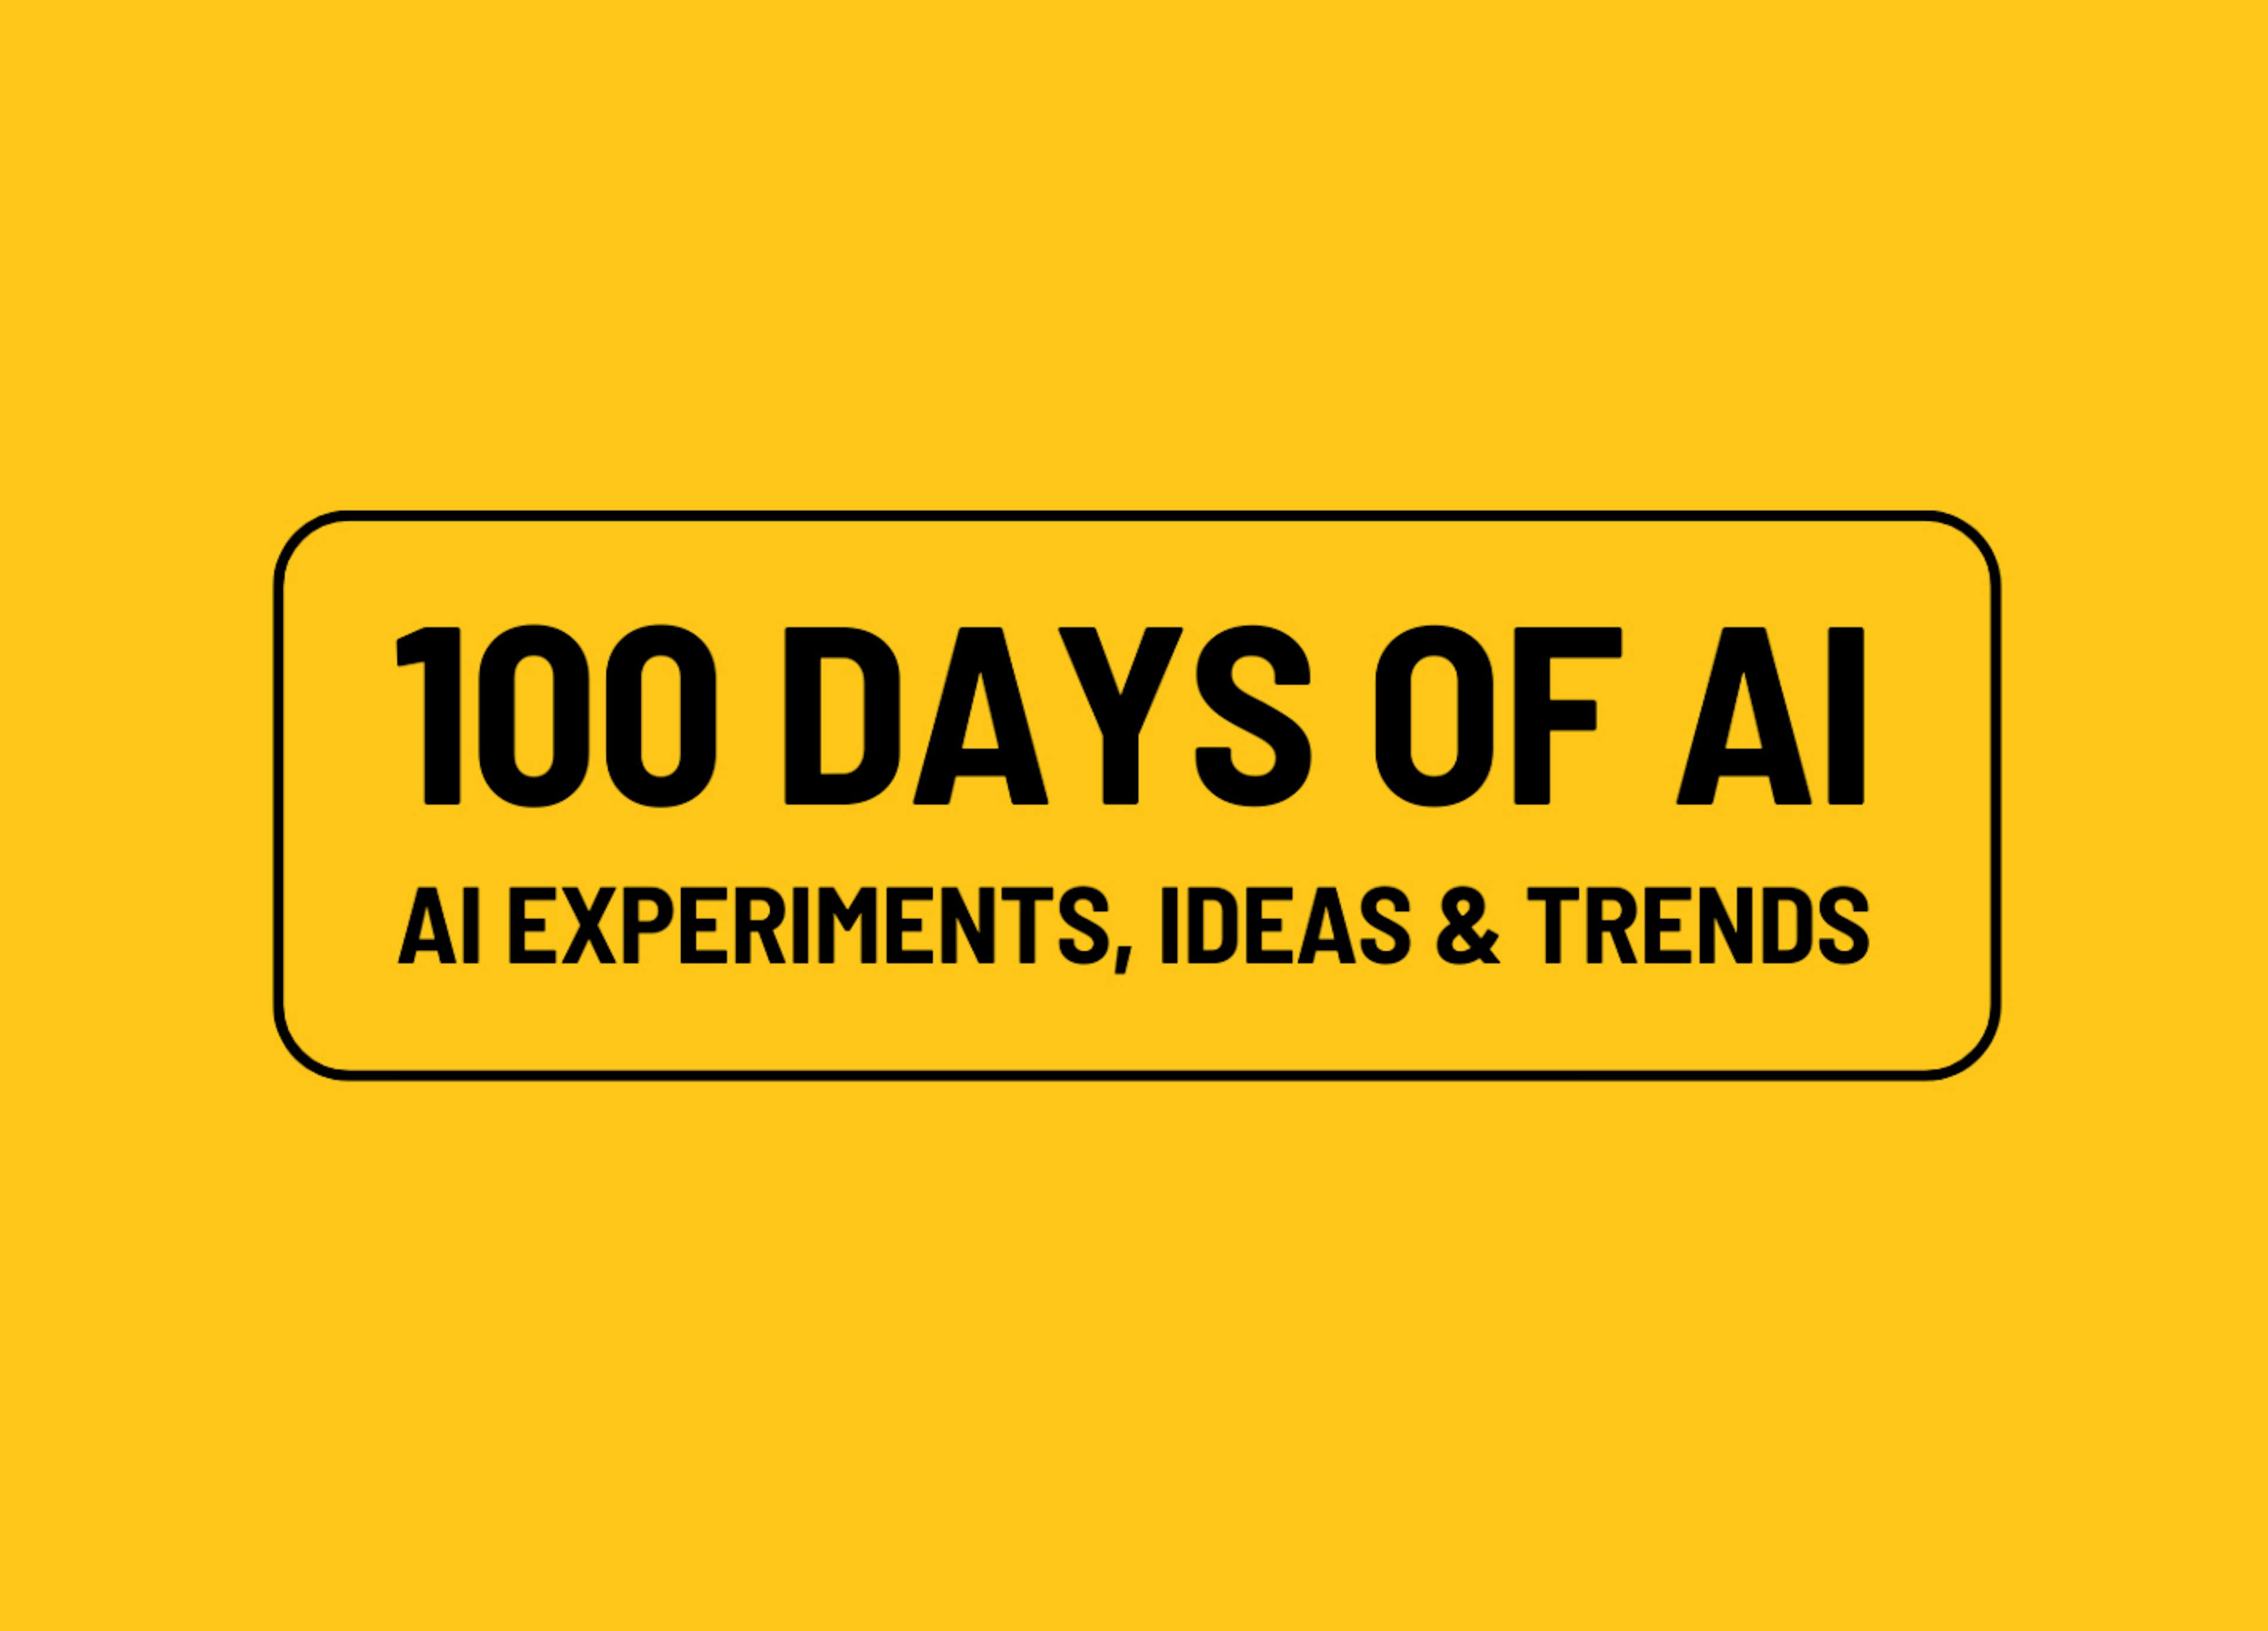 featured image - 100 días de IA, día 15: Cómo las empresas emergentes aprovechan el poder de la IA generativa en sus productos